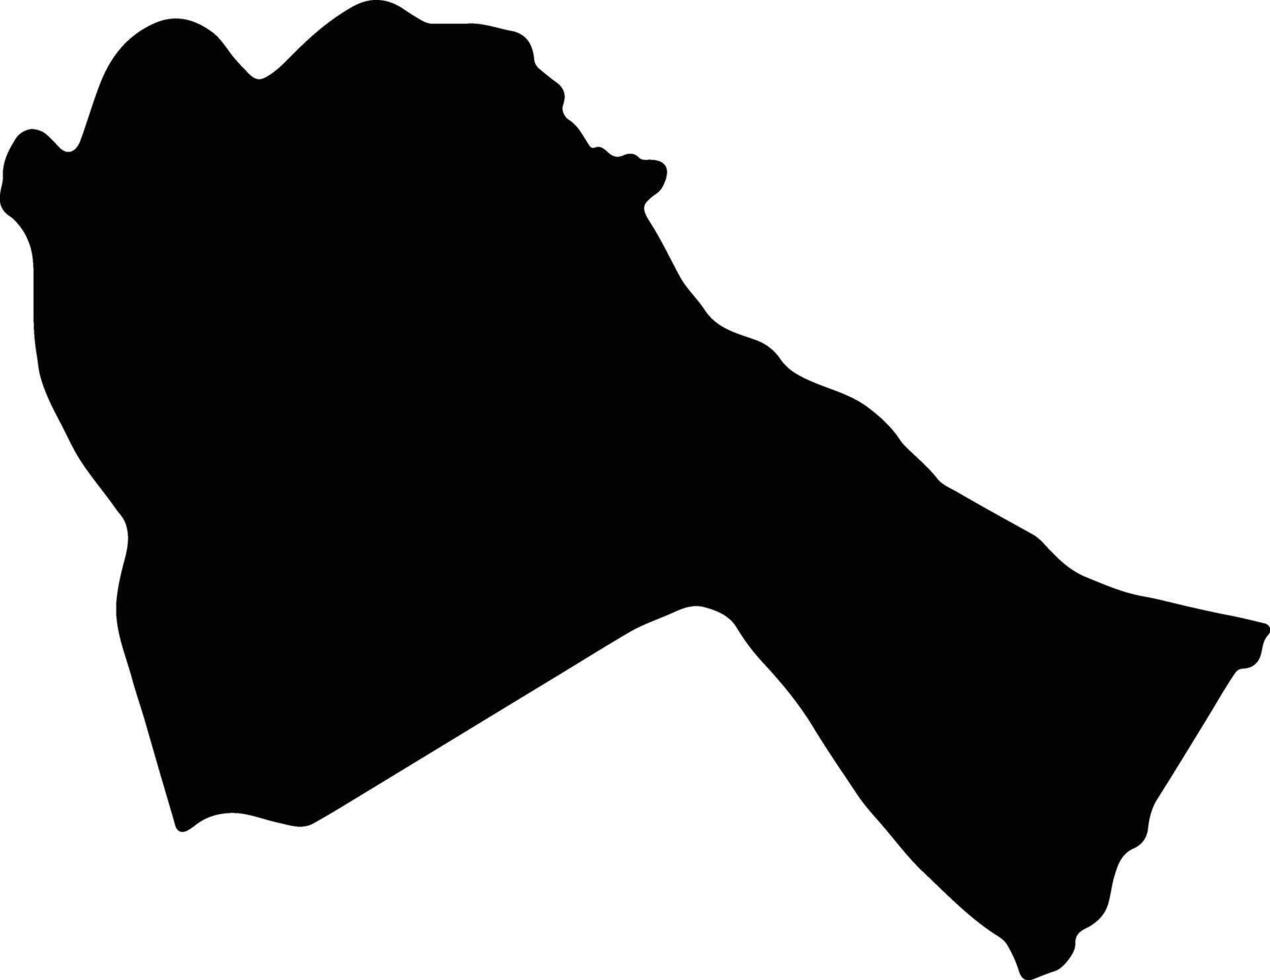 sénar Soudan silhouette carte vecteur